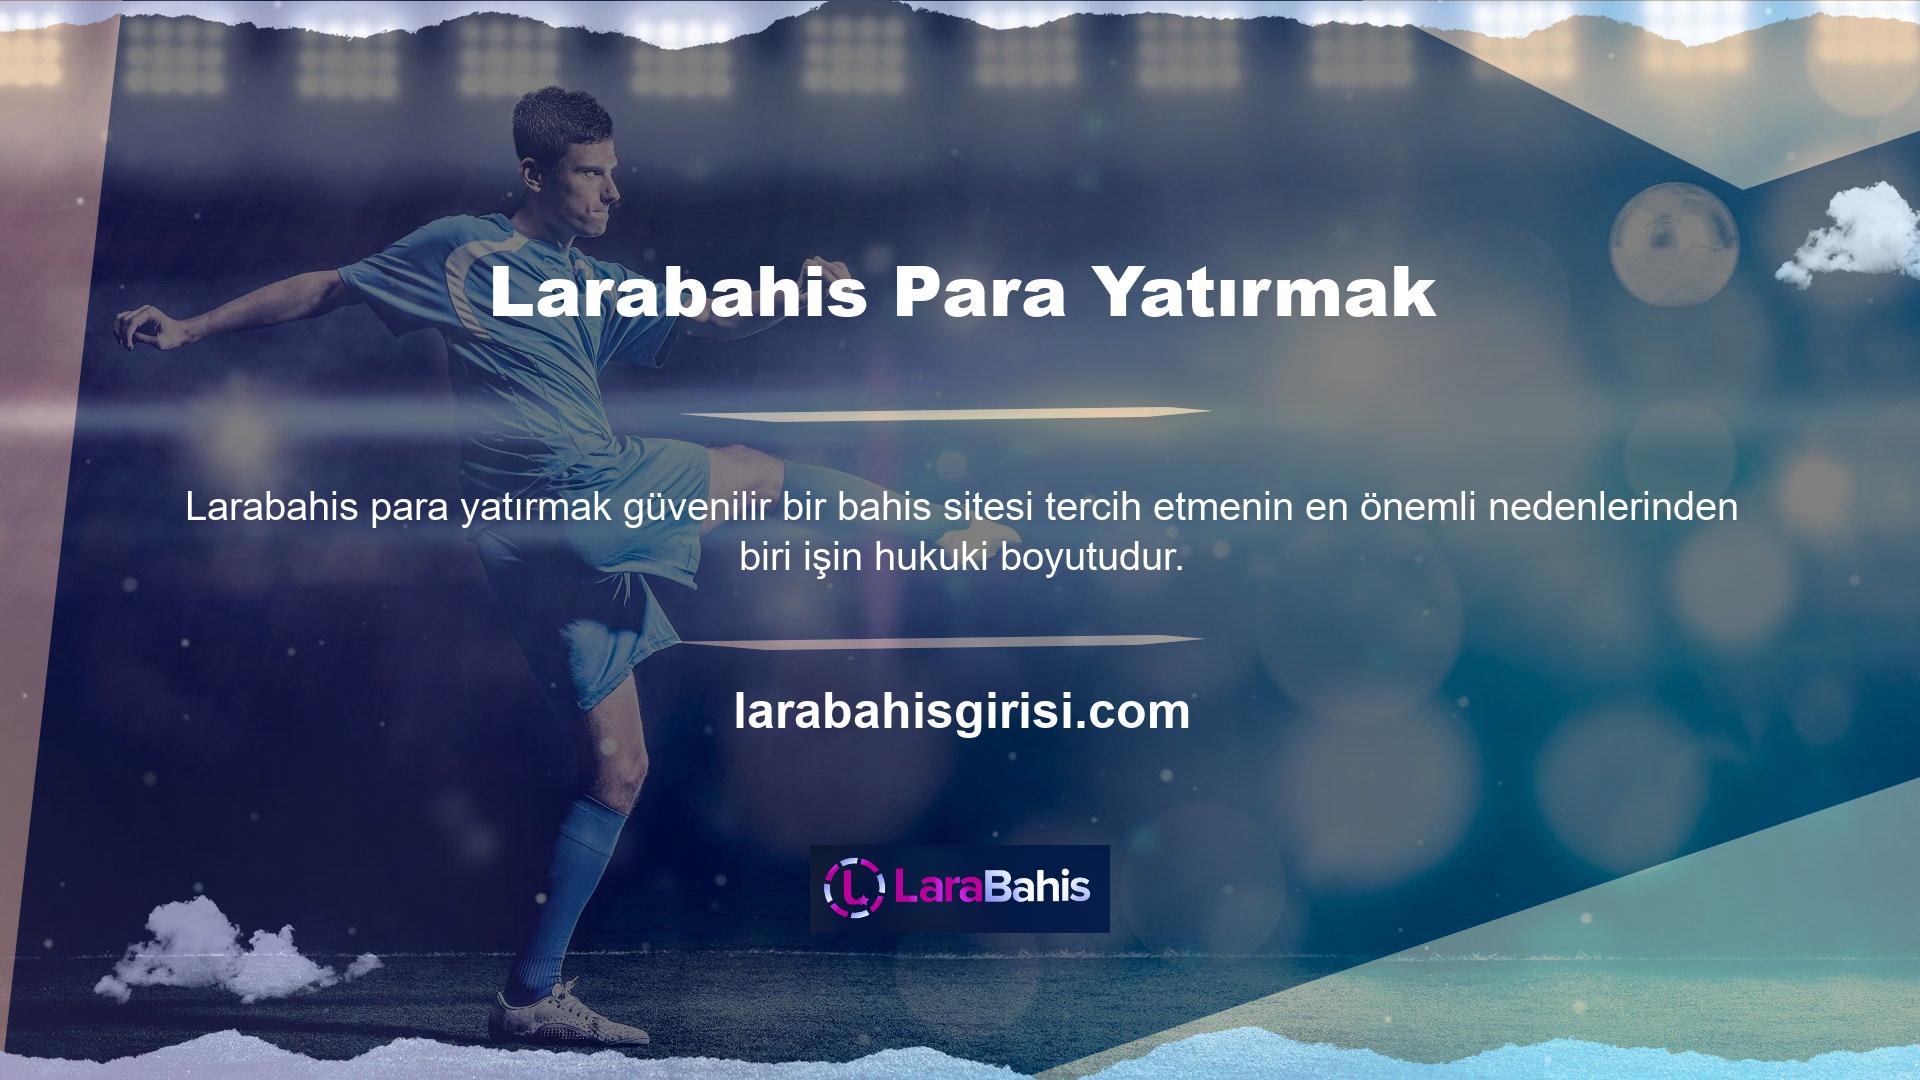 Hiç uğraşmadan para yatırmak istiyorsanız Larabahis sitesi doğru seçimdir